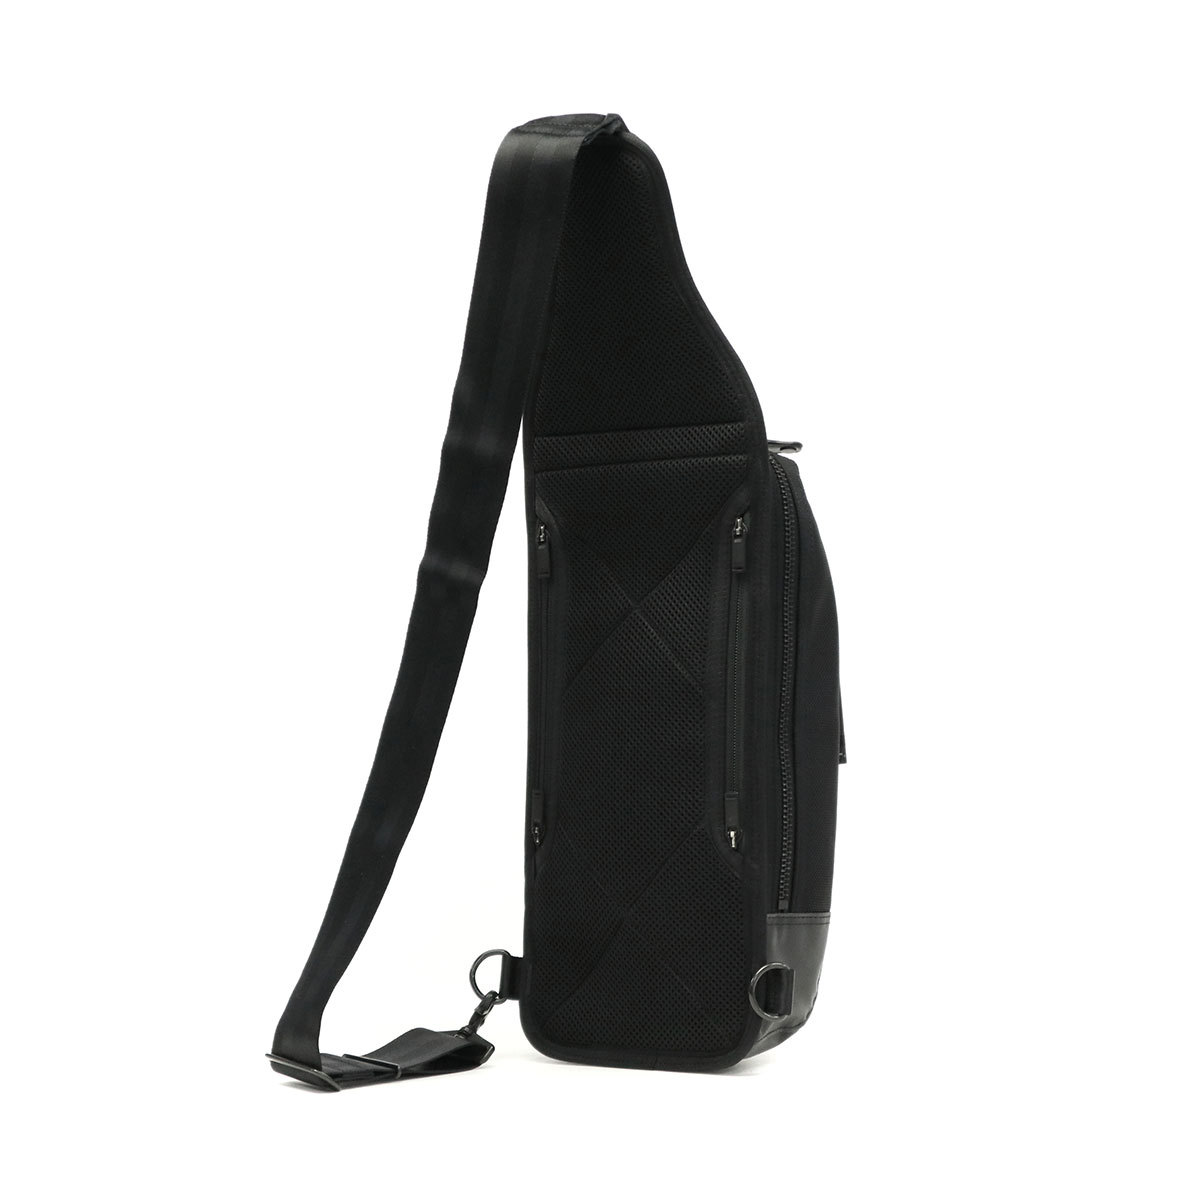  Porter нагрев sling сумка на плечо 703-08000 сумка "body" Yoshida bag PORTER HEAT мужской сумка наклонный .. one плечо 